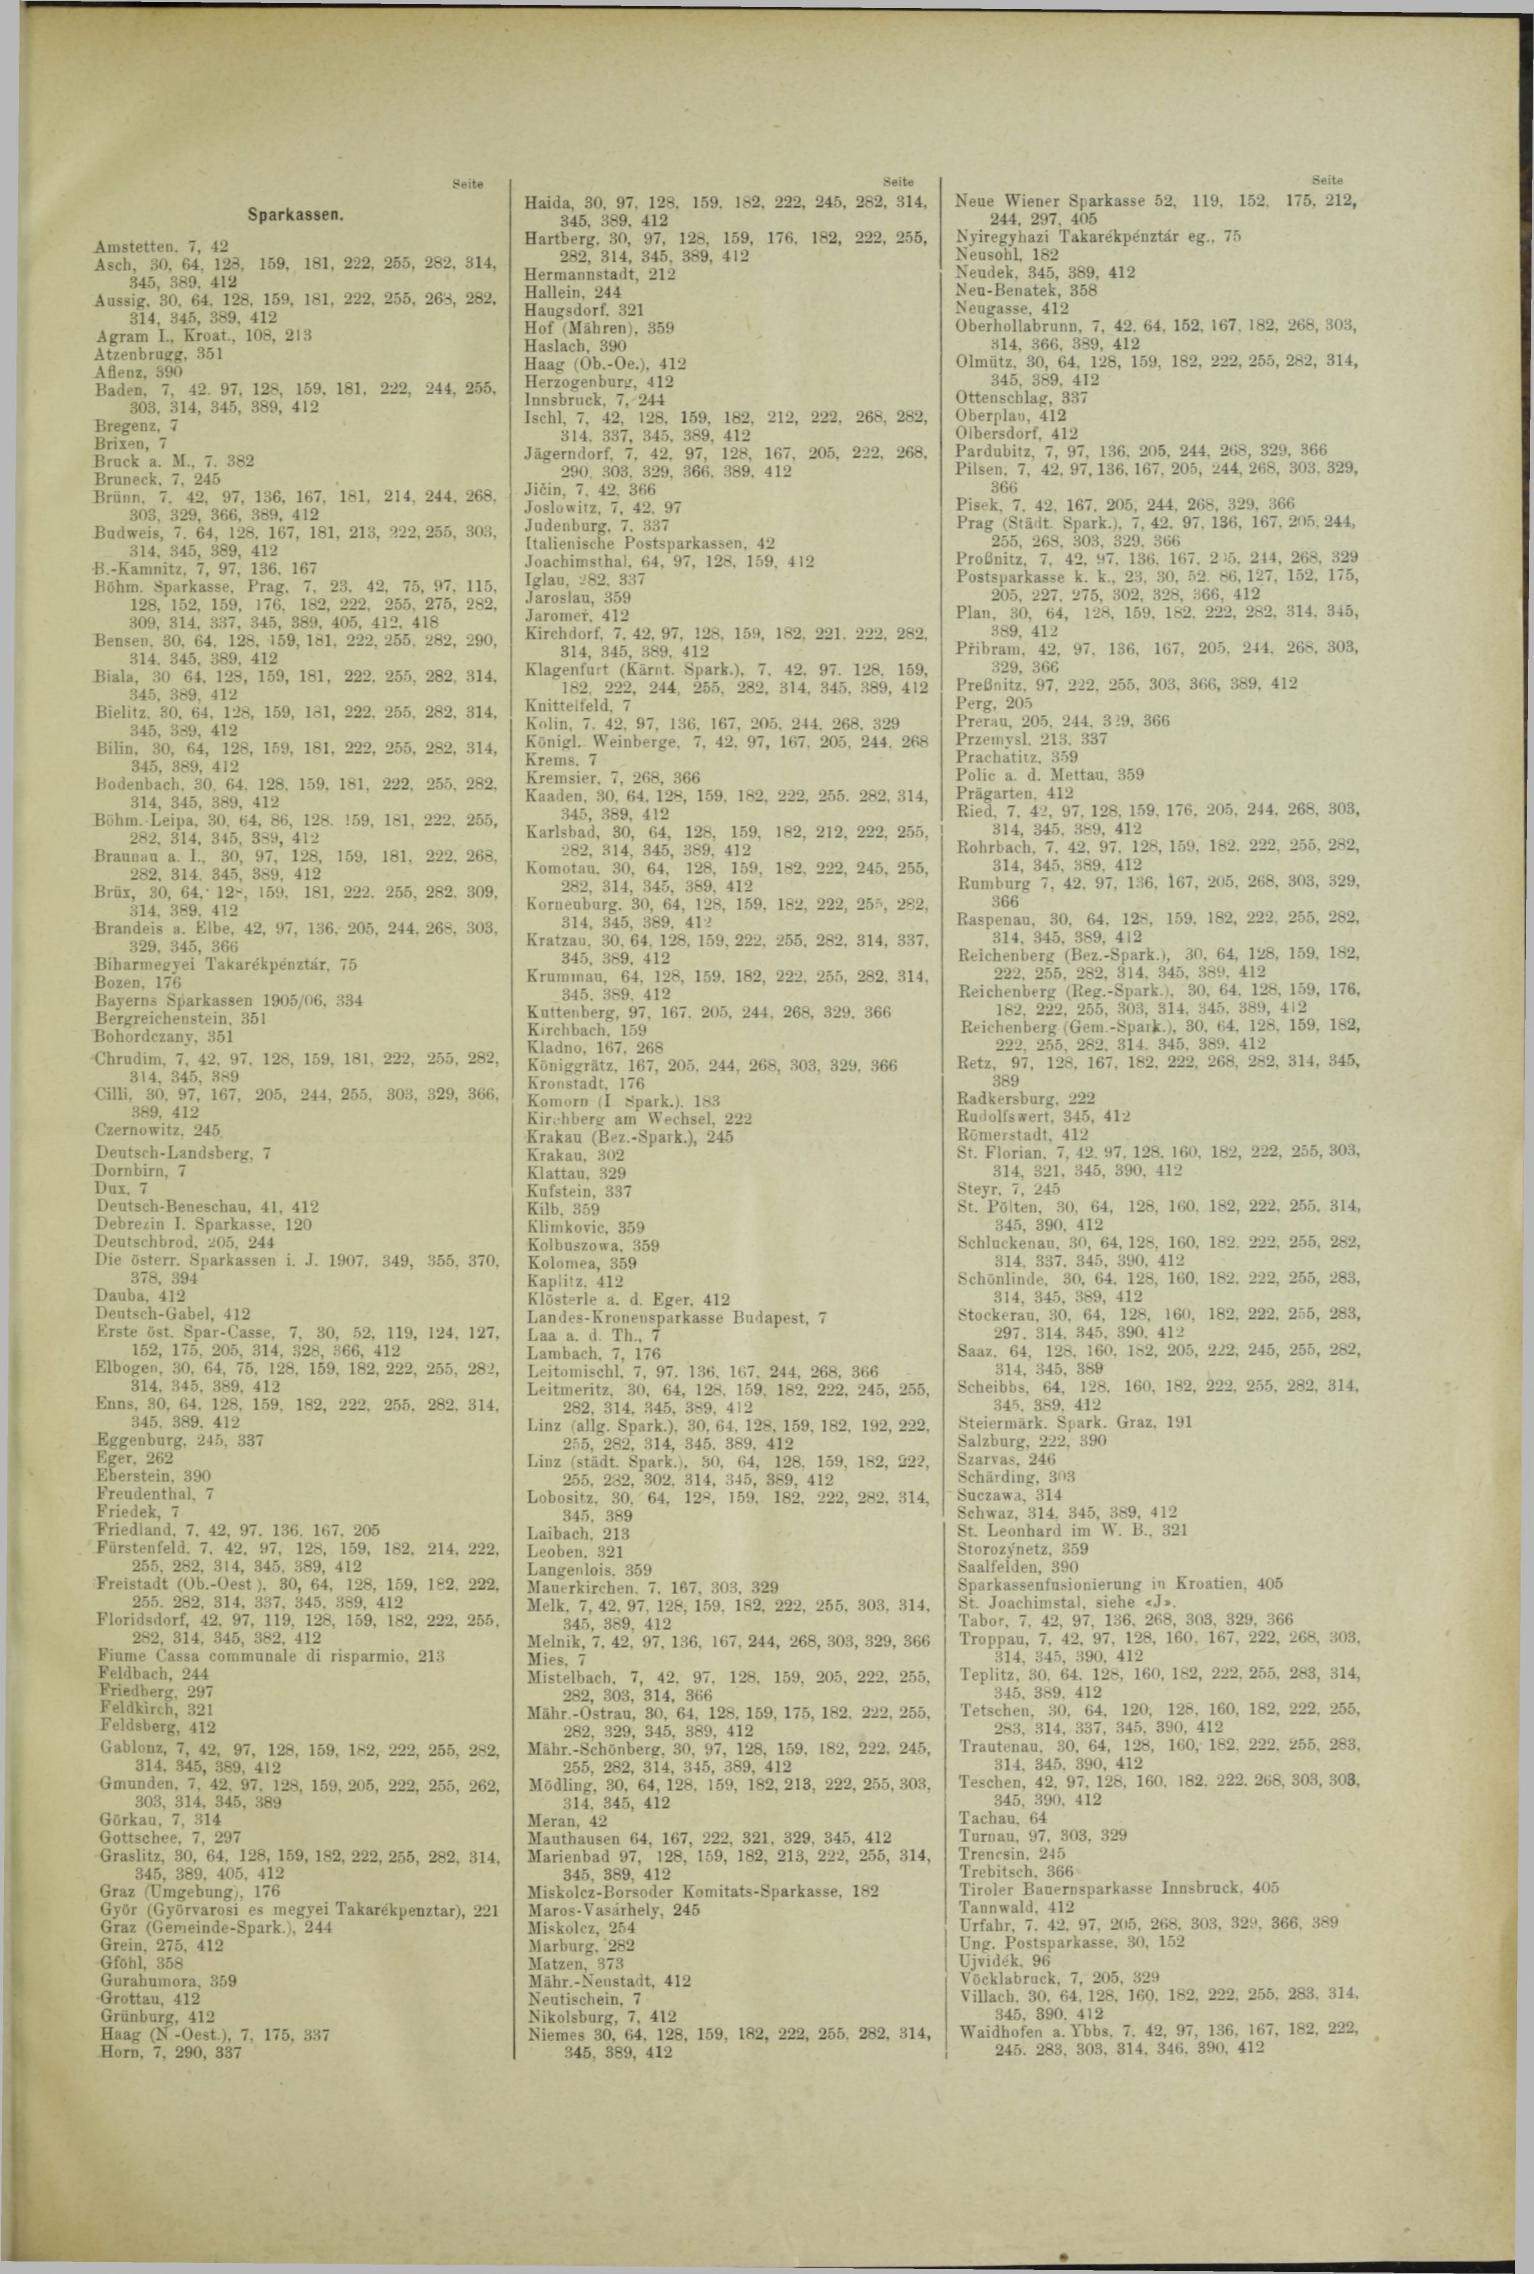 Der Tresor 26.09.1908 - Seite 11